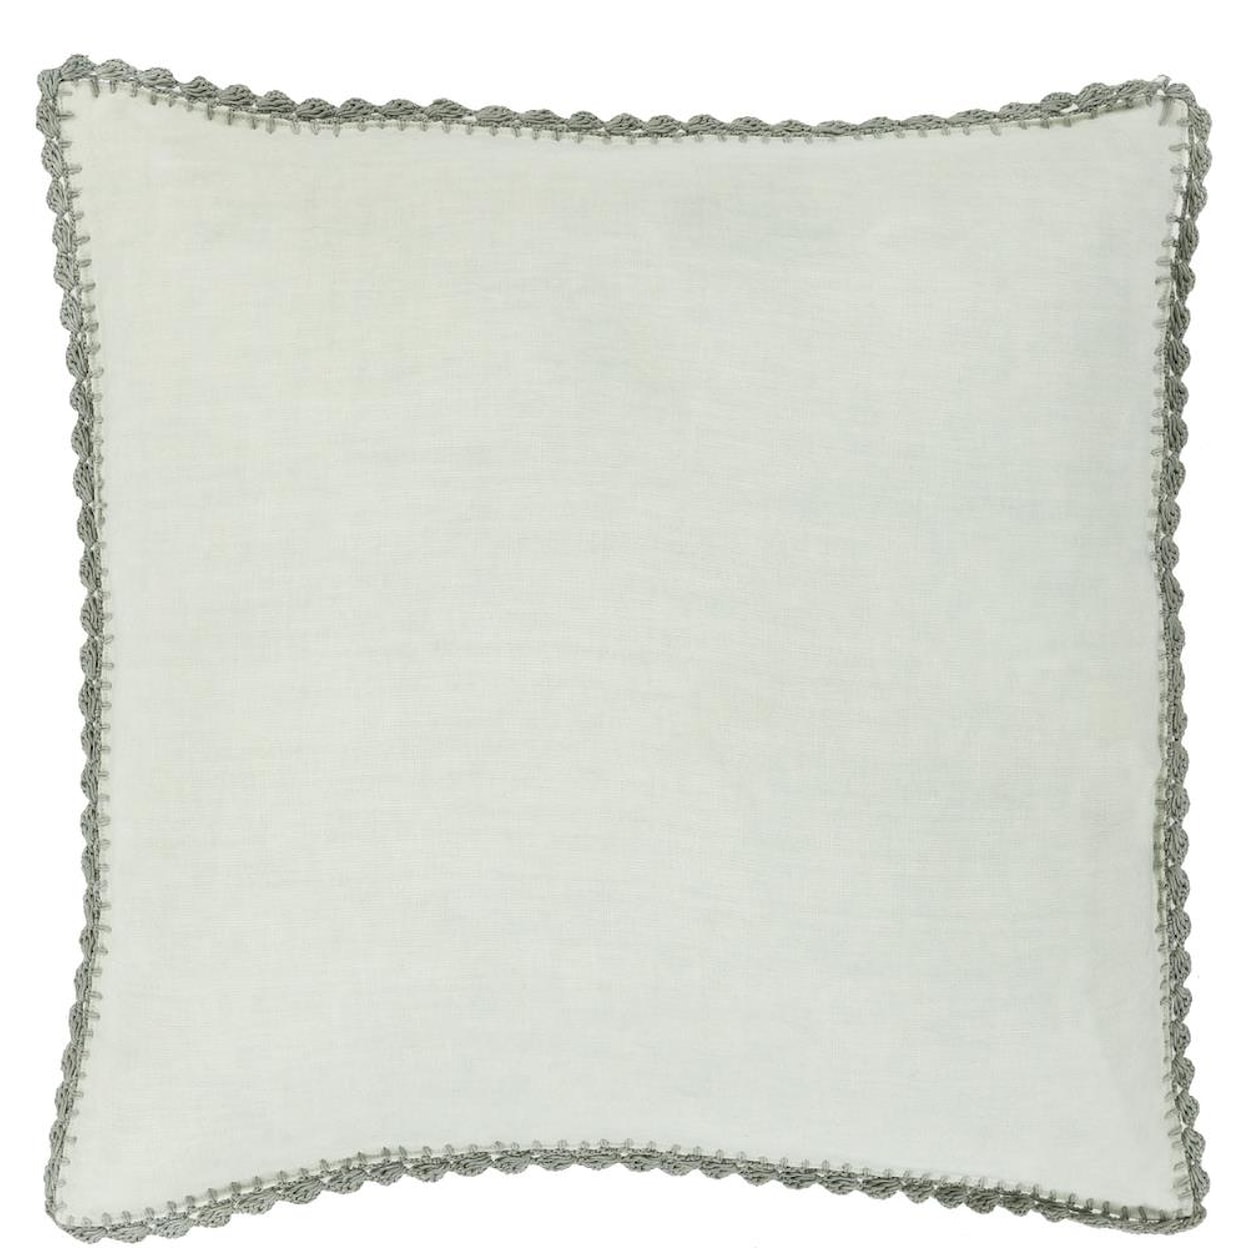 Surya Pillows 18" x 18" Decorative Pillow